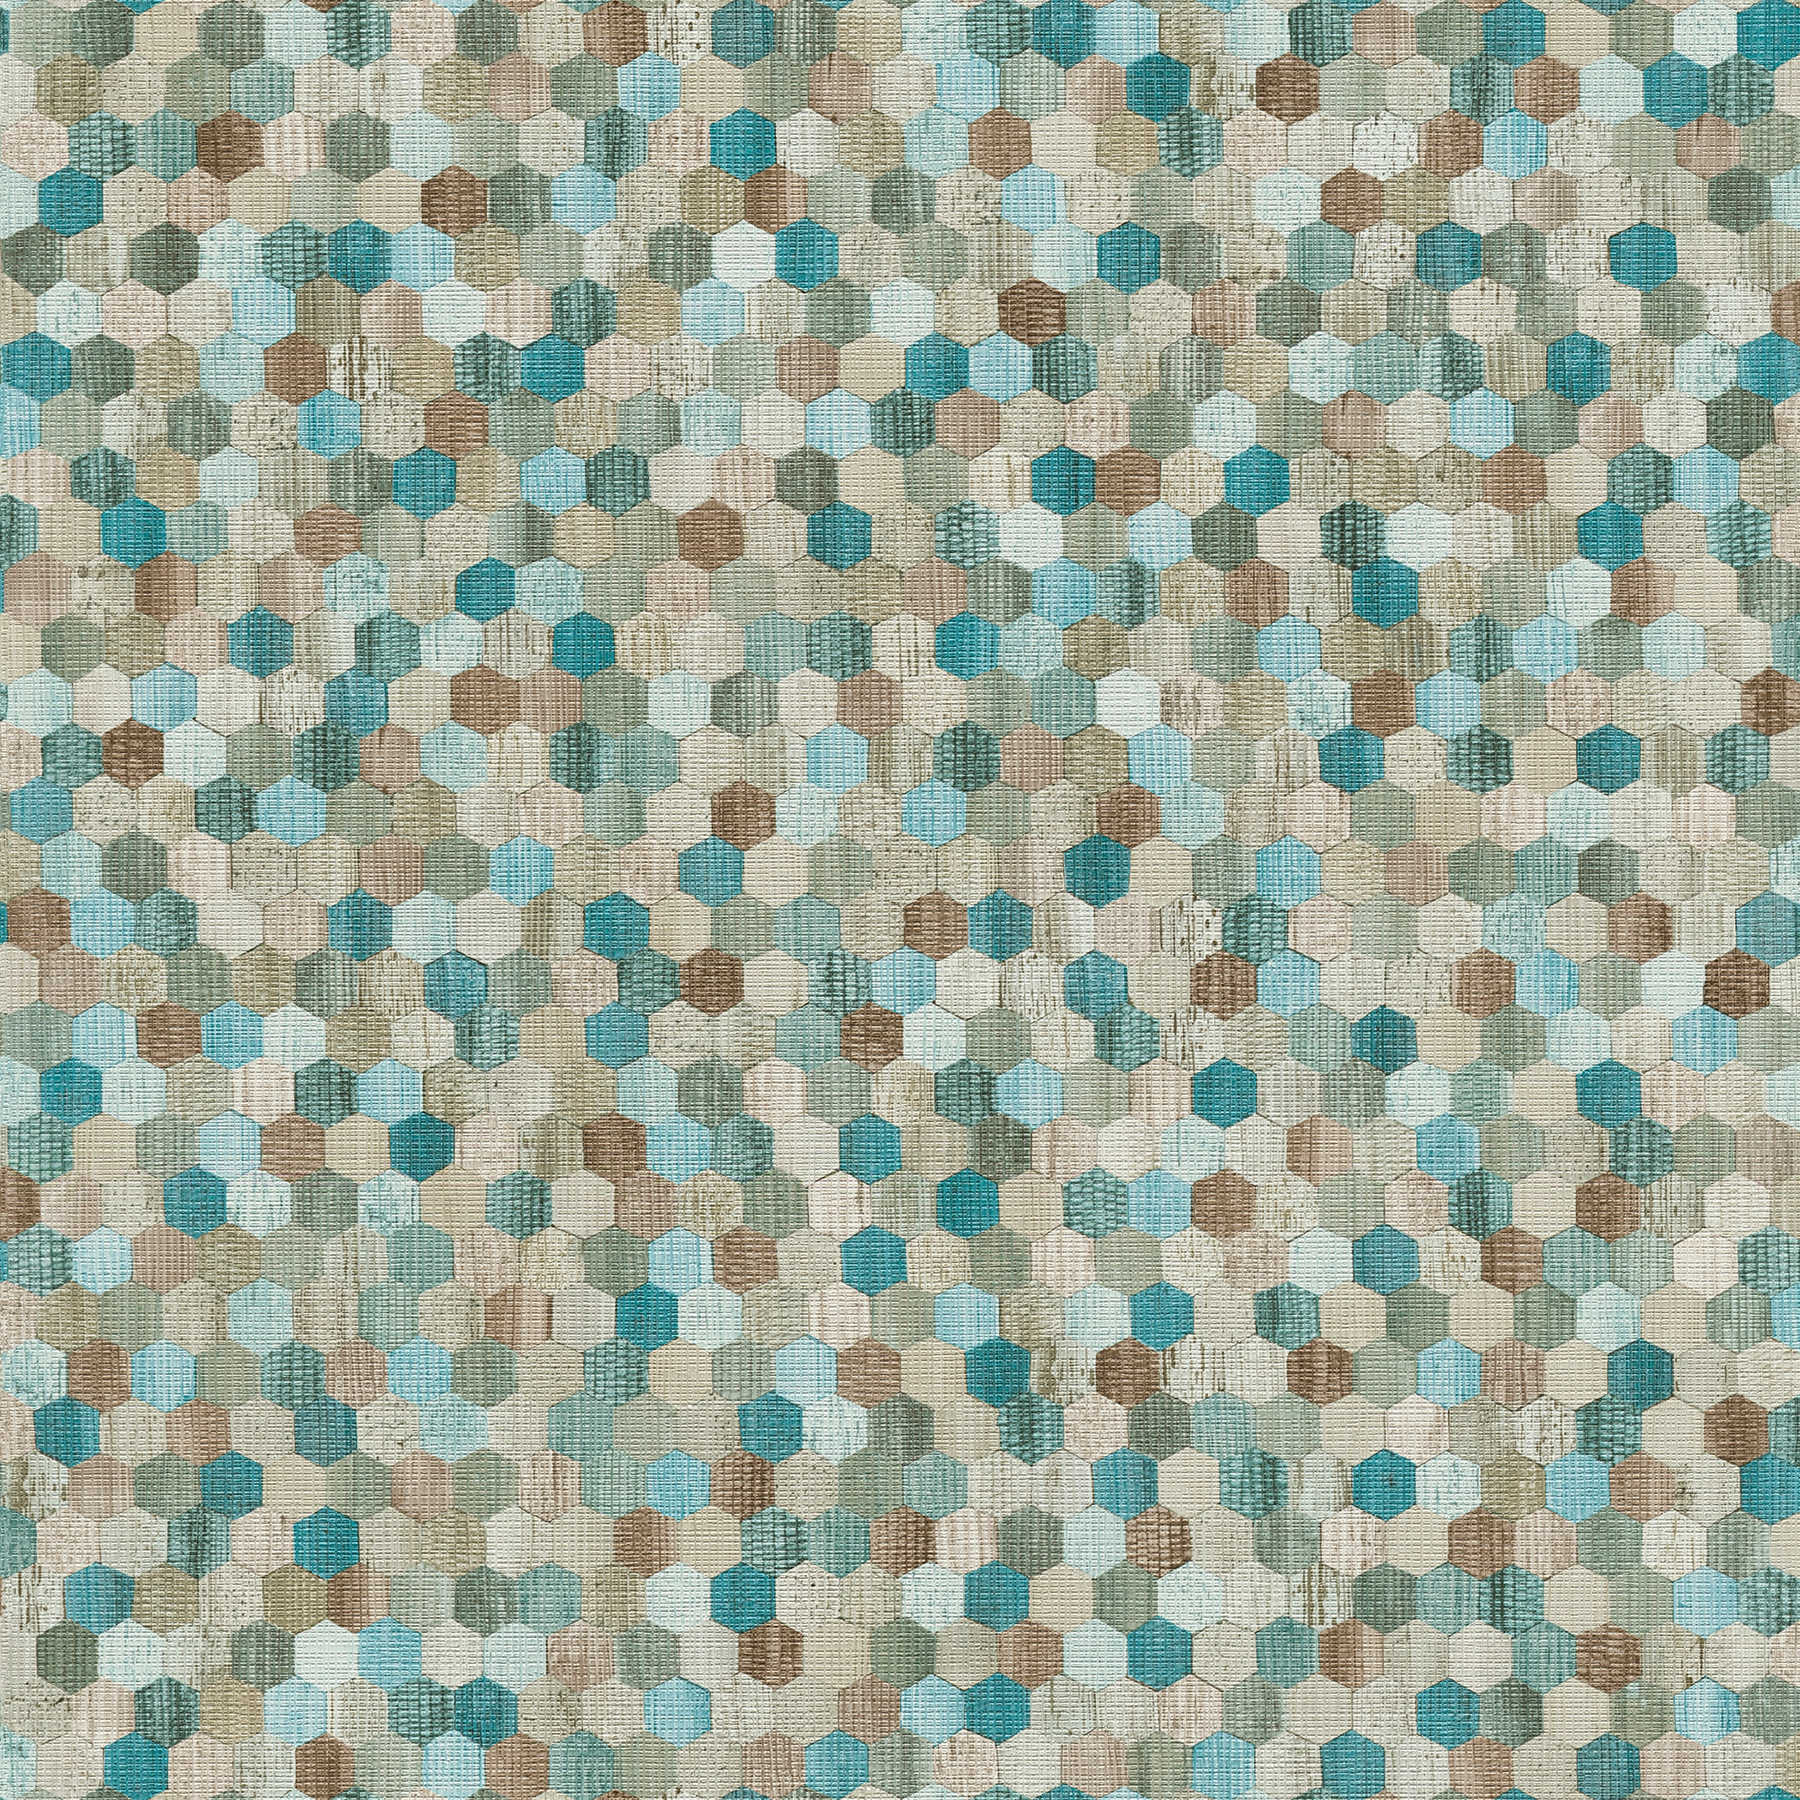         Bunte Vliestapete mit geometrischem Hexagon-Mosaik – Blau, Beige, Grün
    